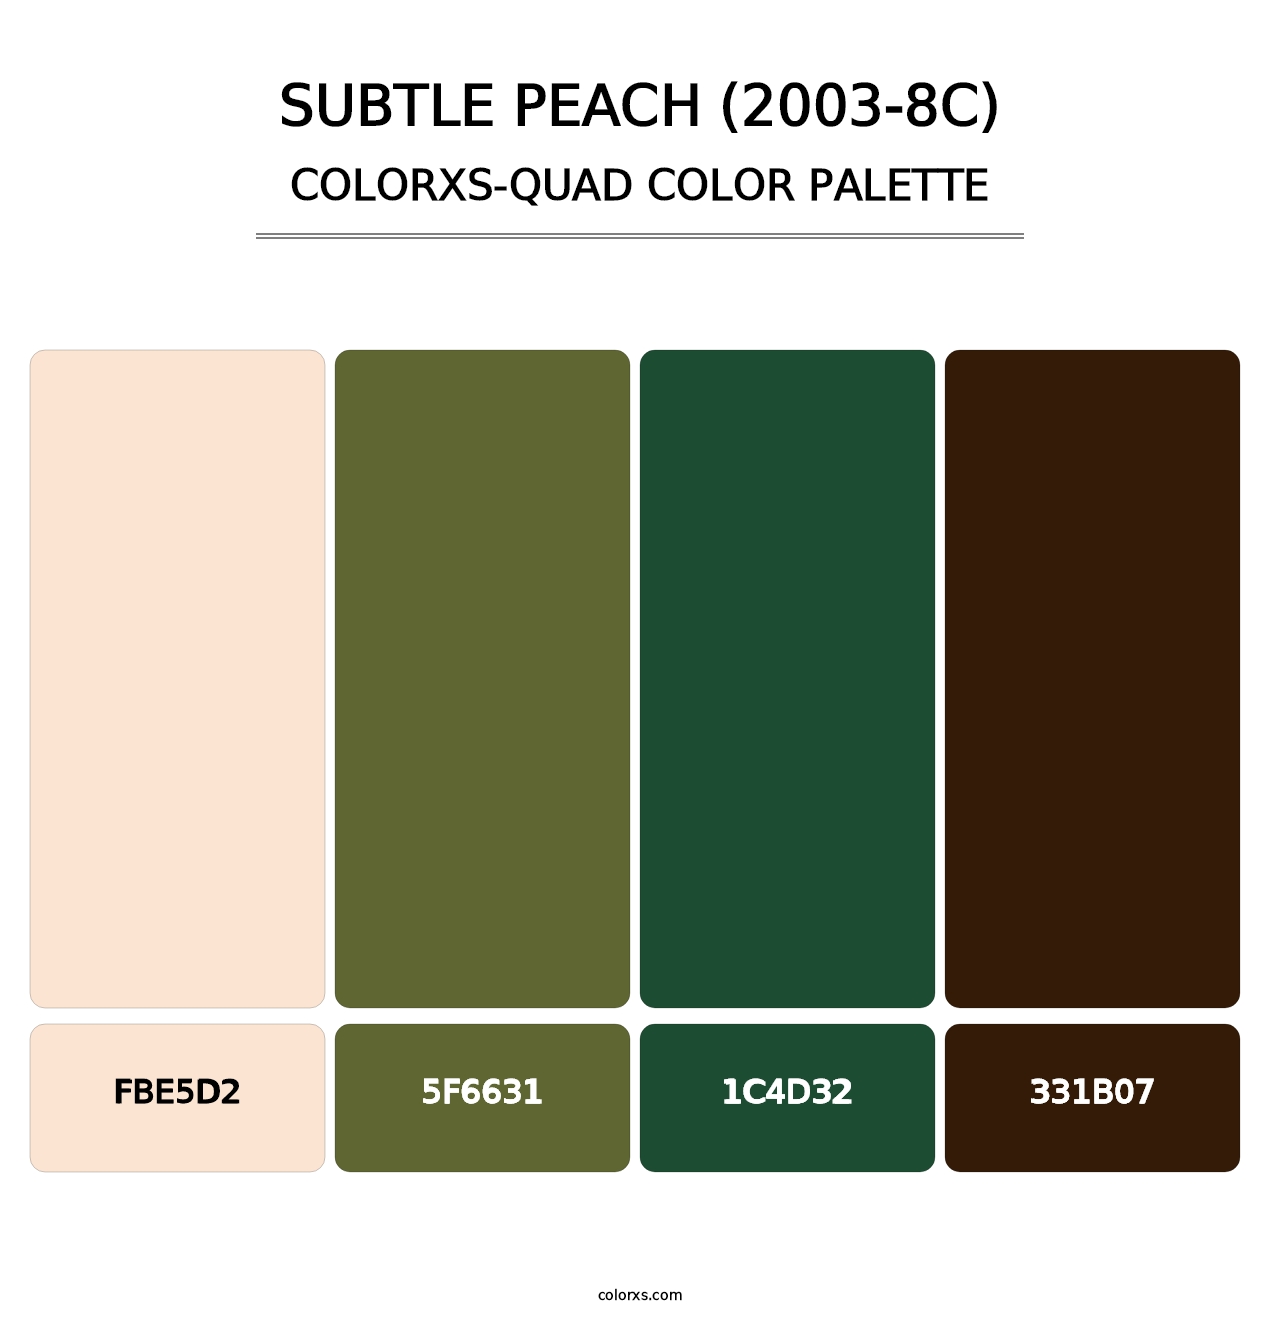 Subtle Peach (2003-8C) - Colorxs Quad Palette